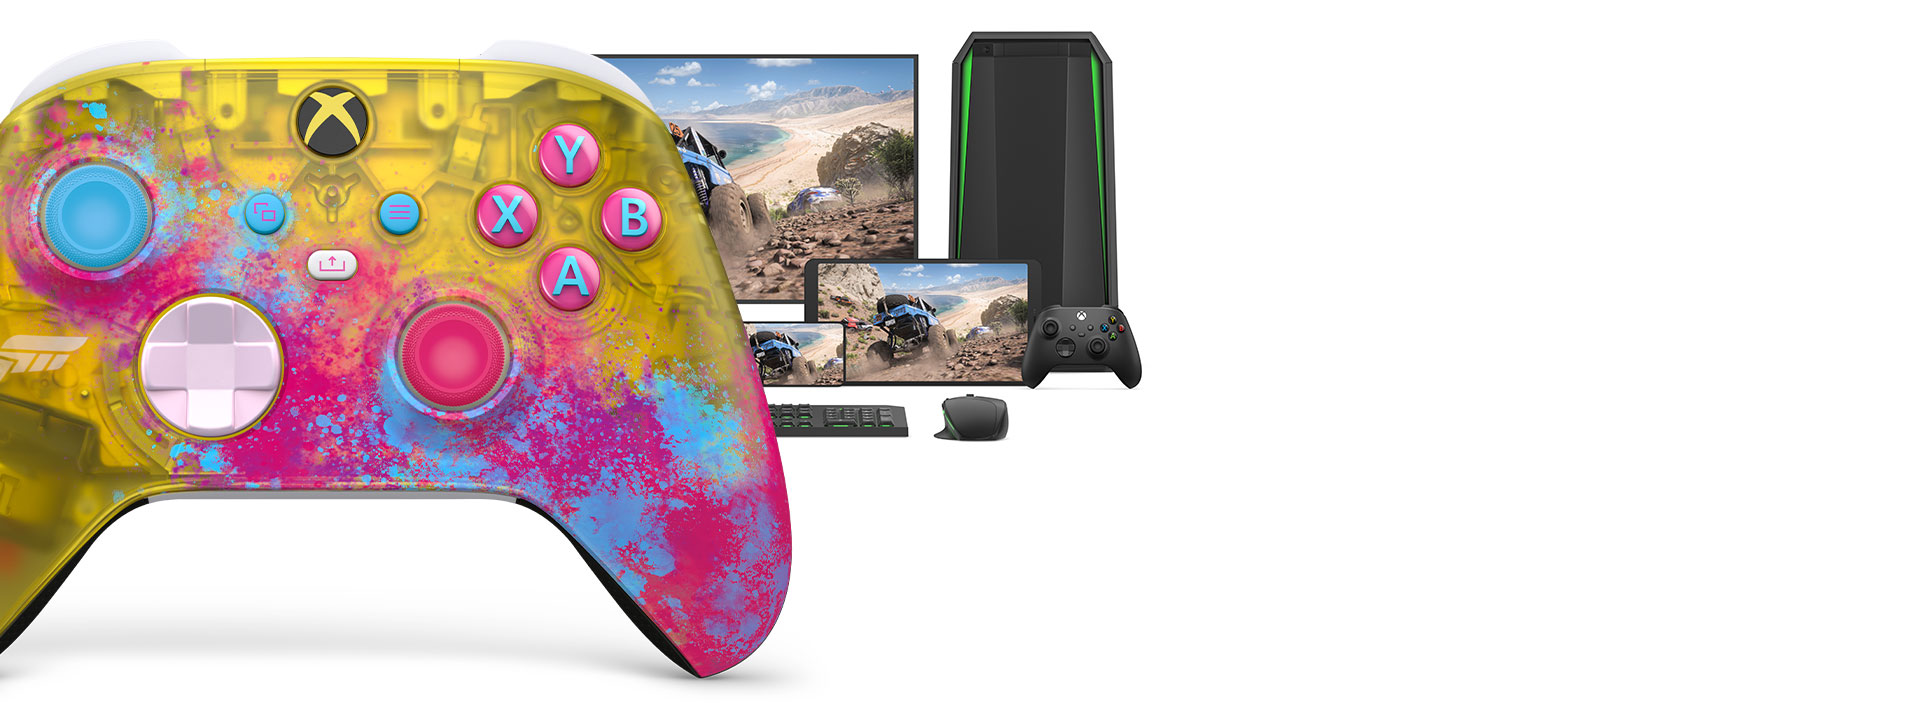 컴퓨터, TV 및 Xbox Series S와 있는 Xbox 무선 컨트롤러 Forza Horizon 5